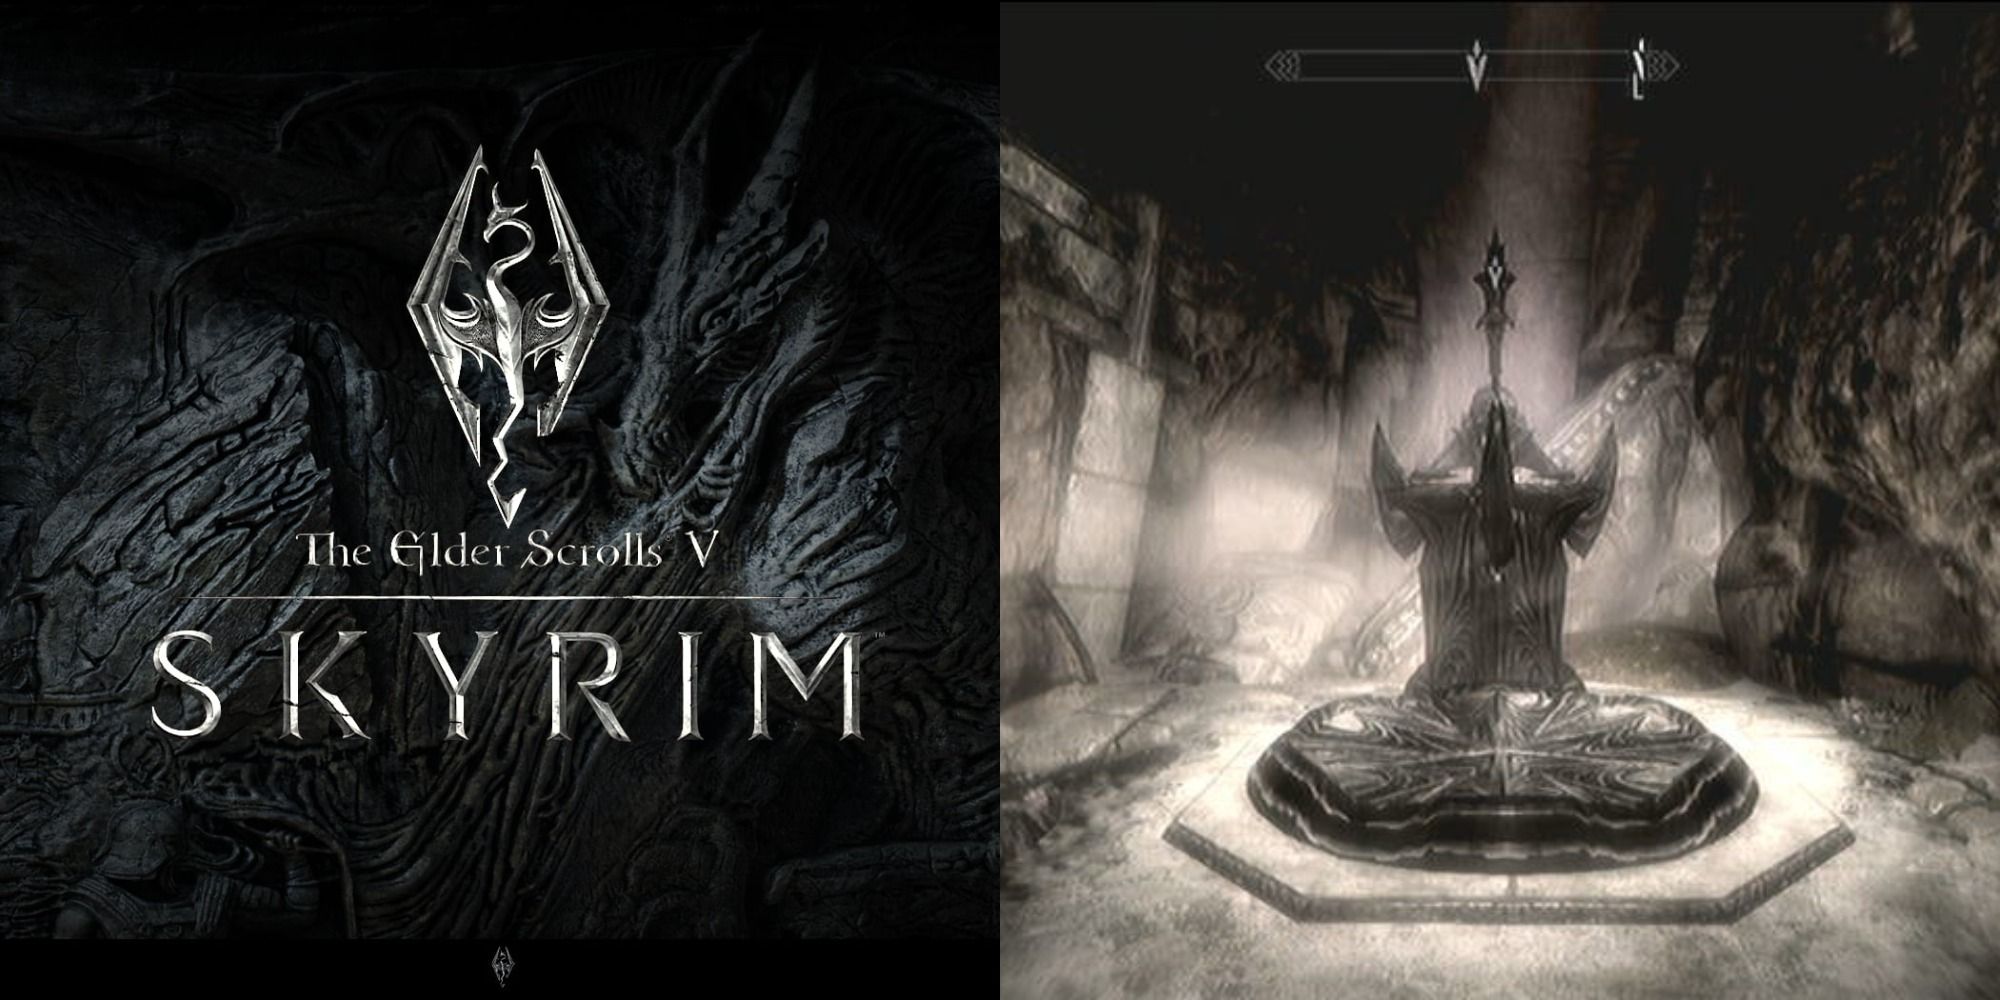 Box art for the video game The Elder Scrolls V: Skyrim.